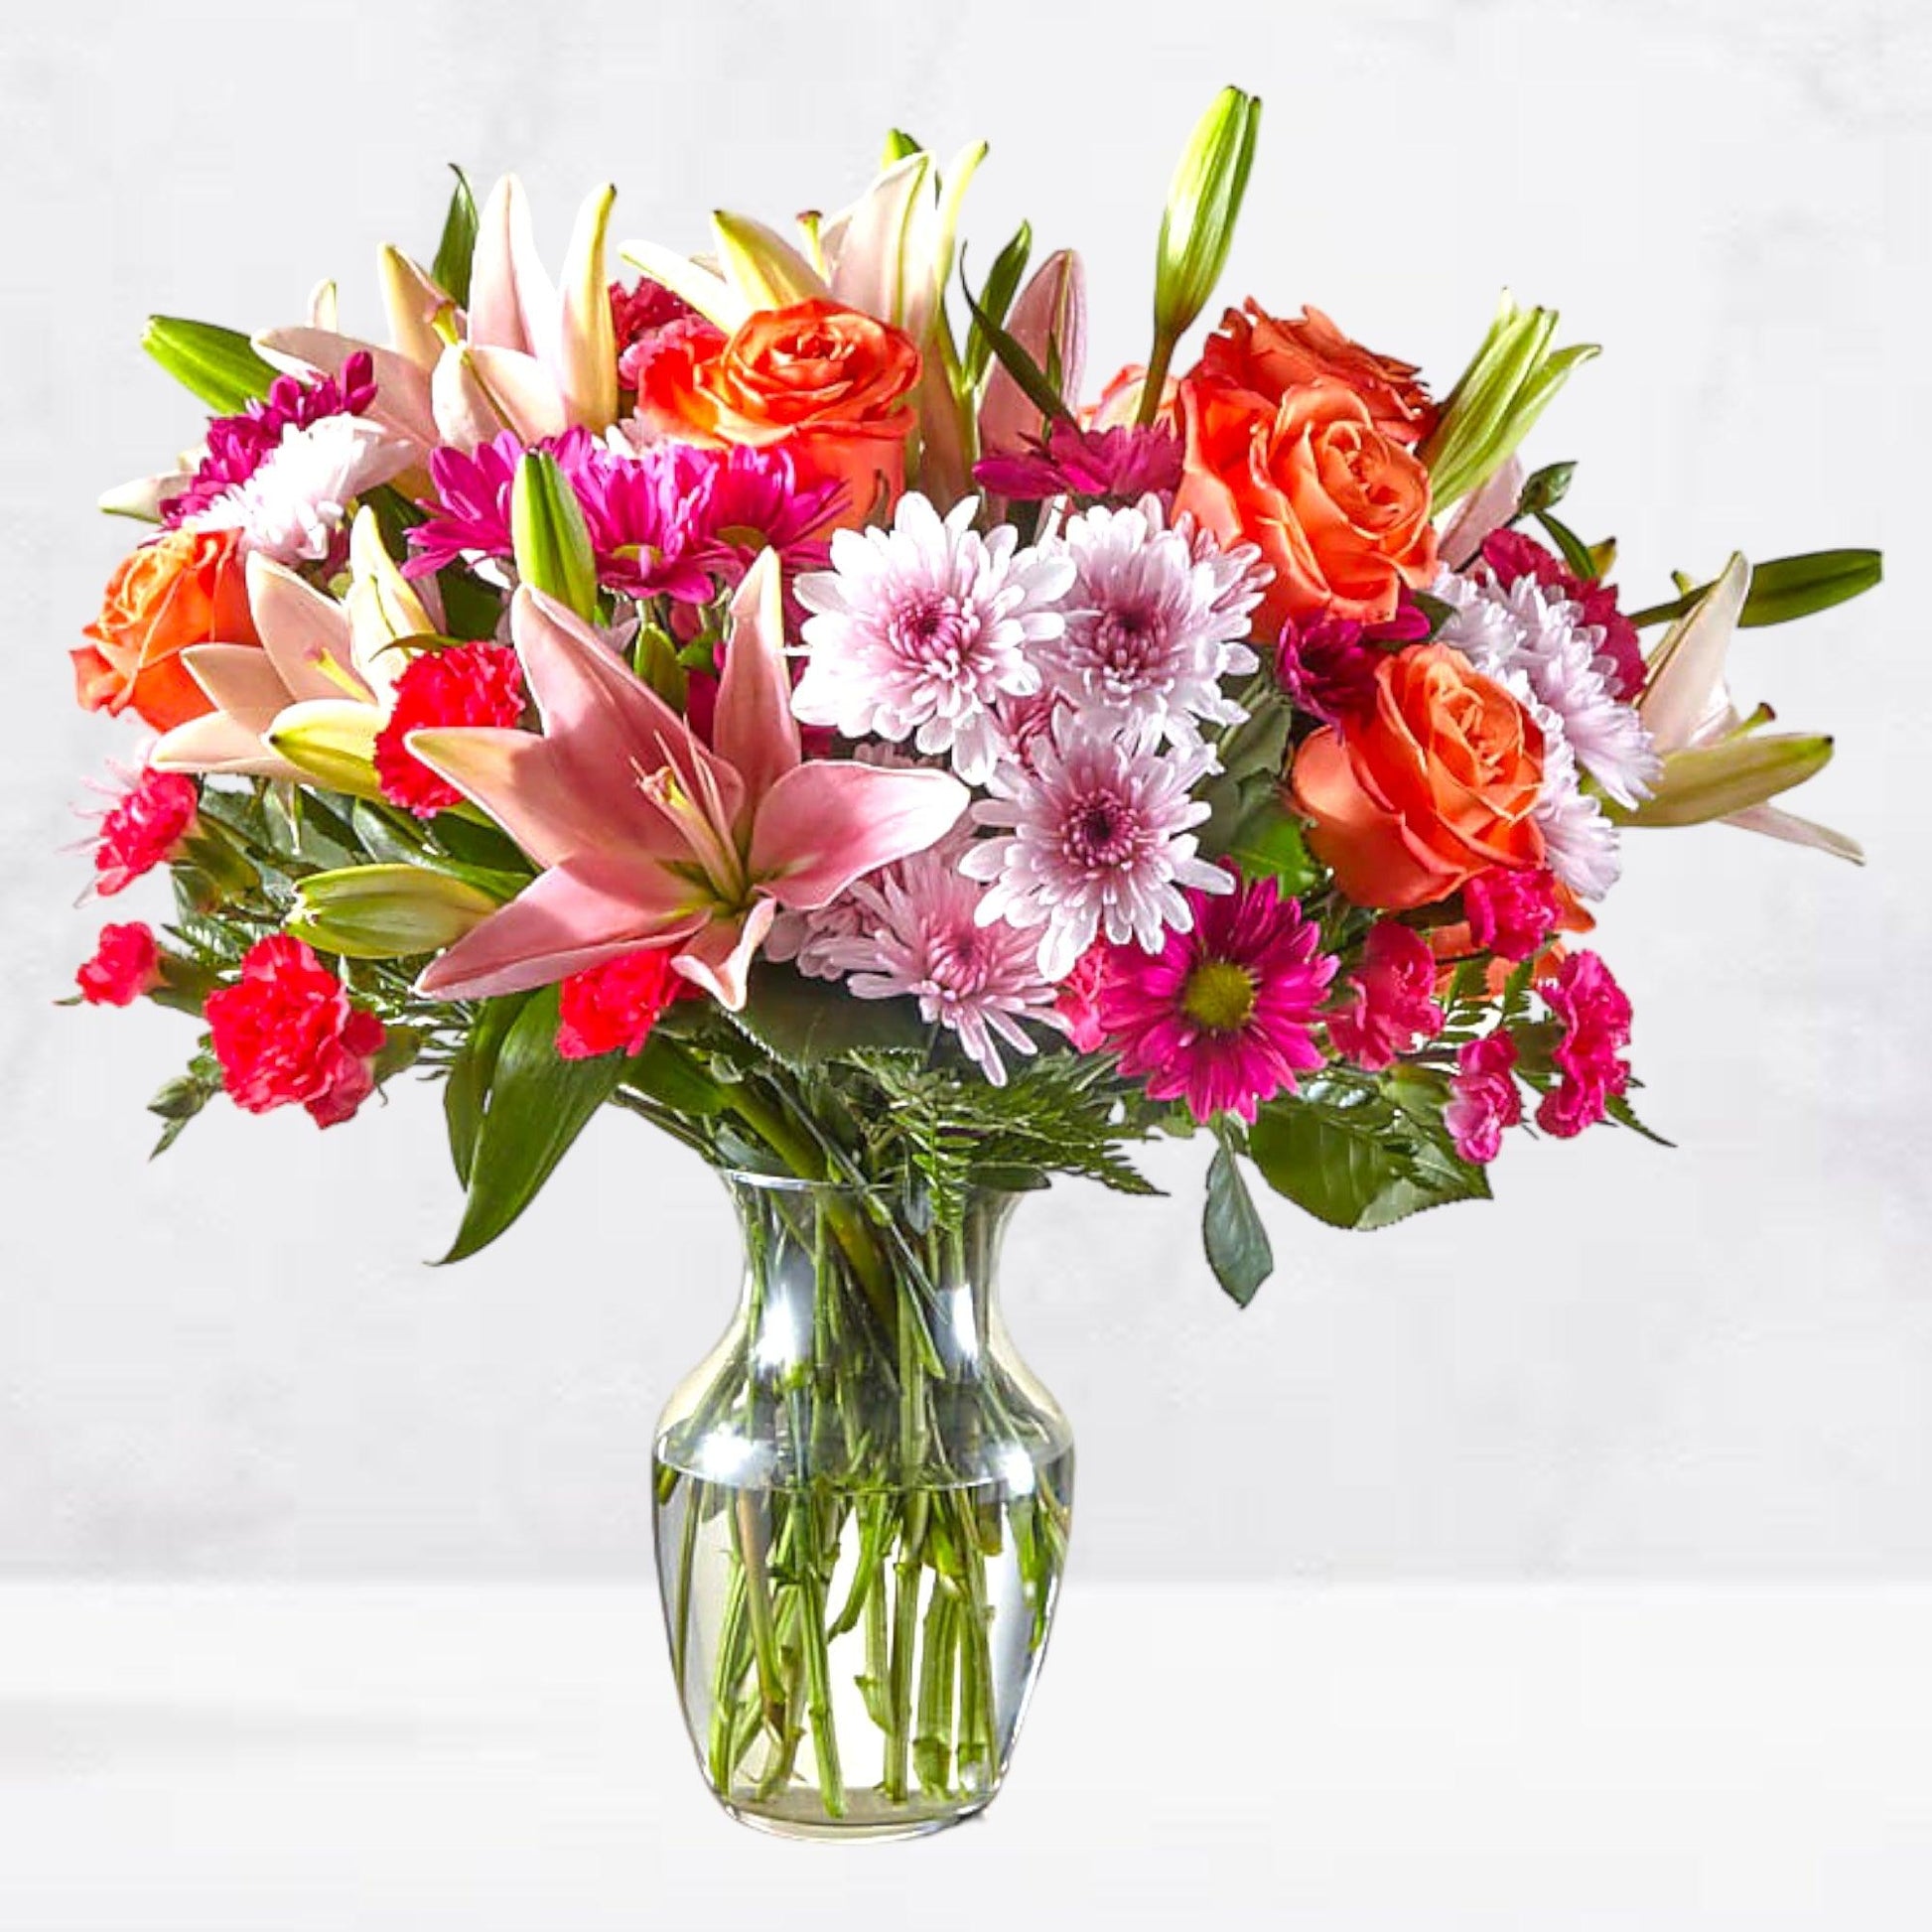 Light of my Life Bouquet - DGM Flowers  | Fort Lauderdale Florist